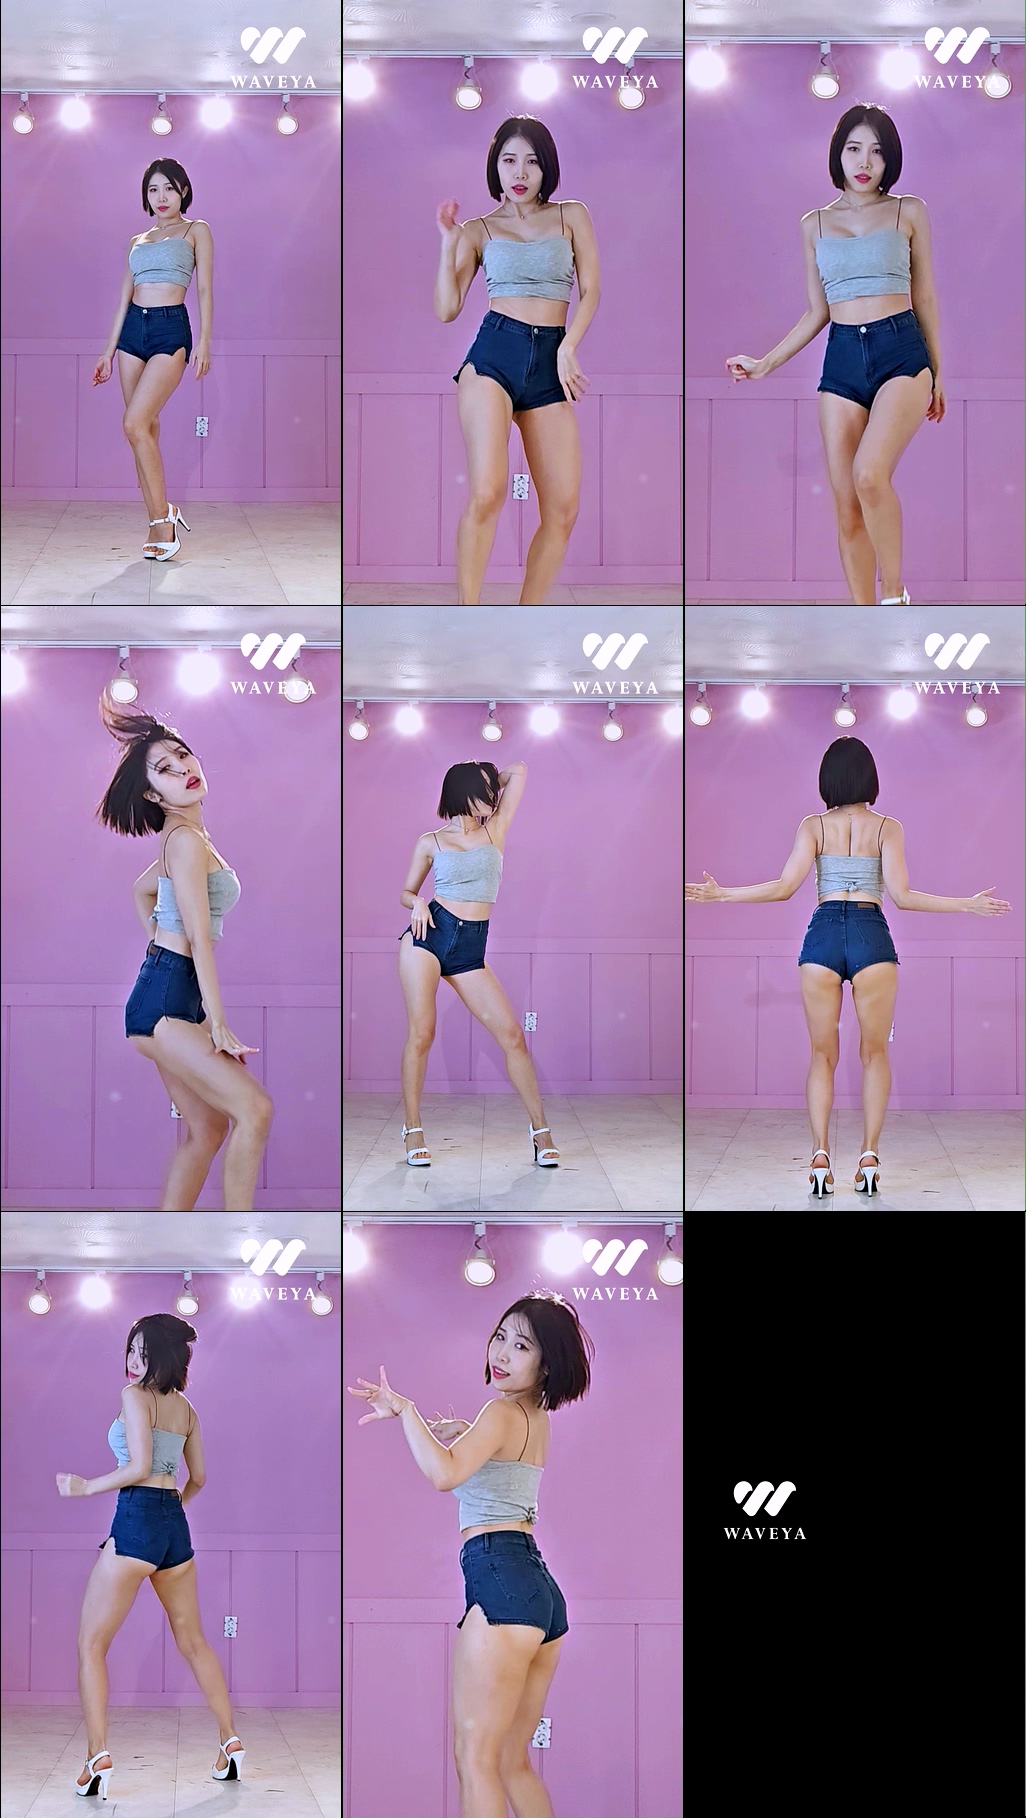 [입덕직캠] LE SSERAFIM – Smart 르세라핌 dance cover Waveya MiU 웨이브야 미유 – #0821插图